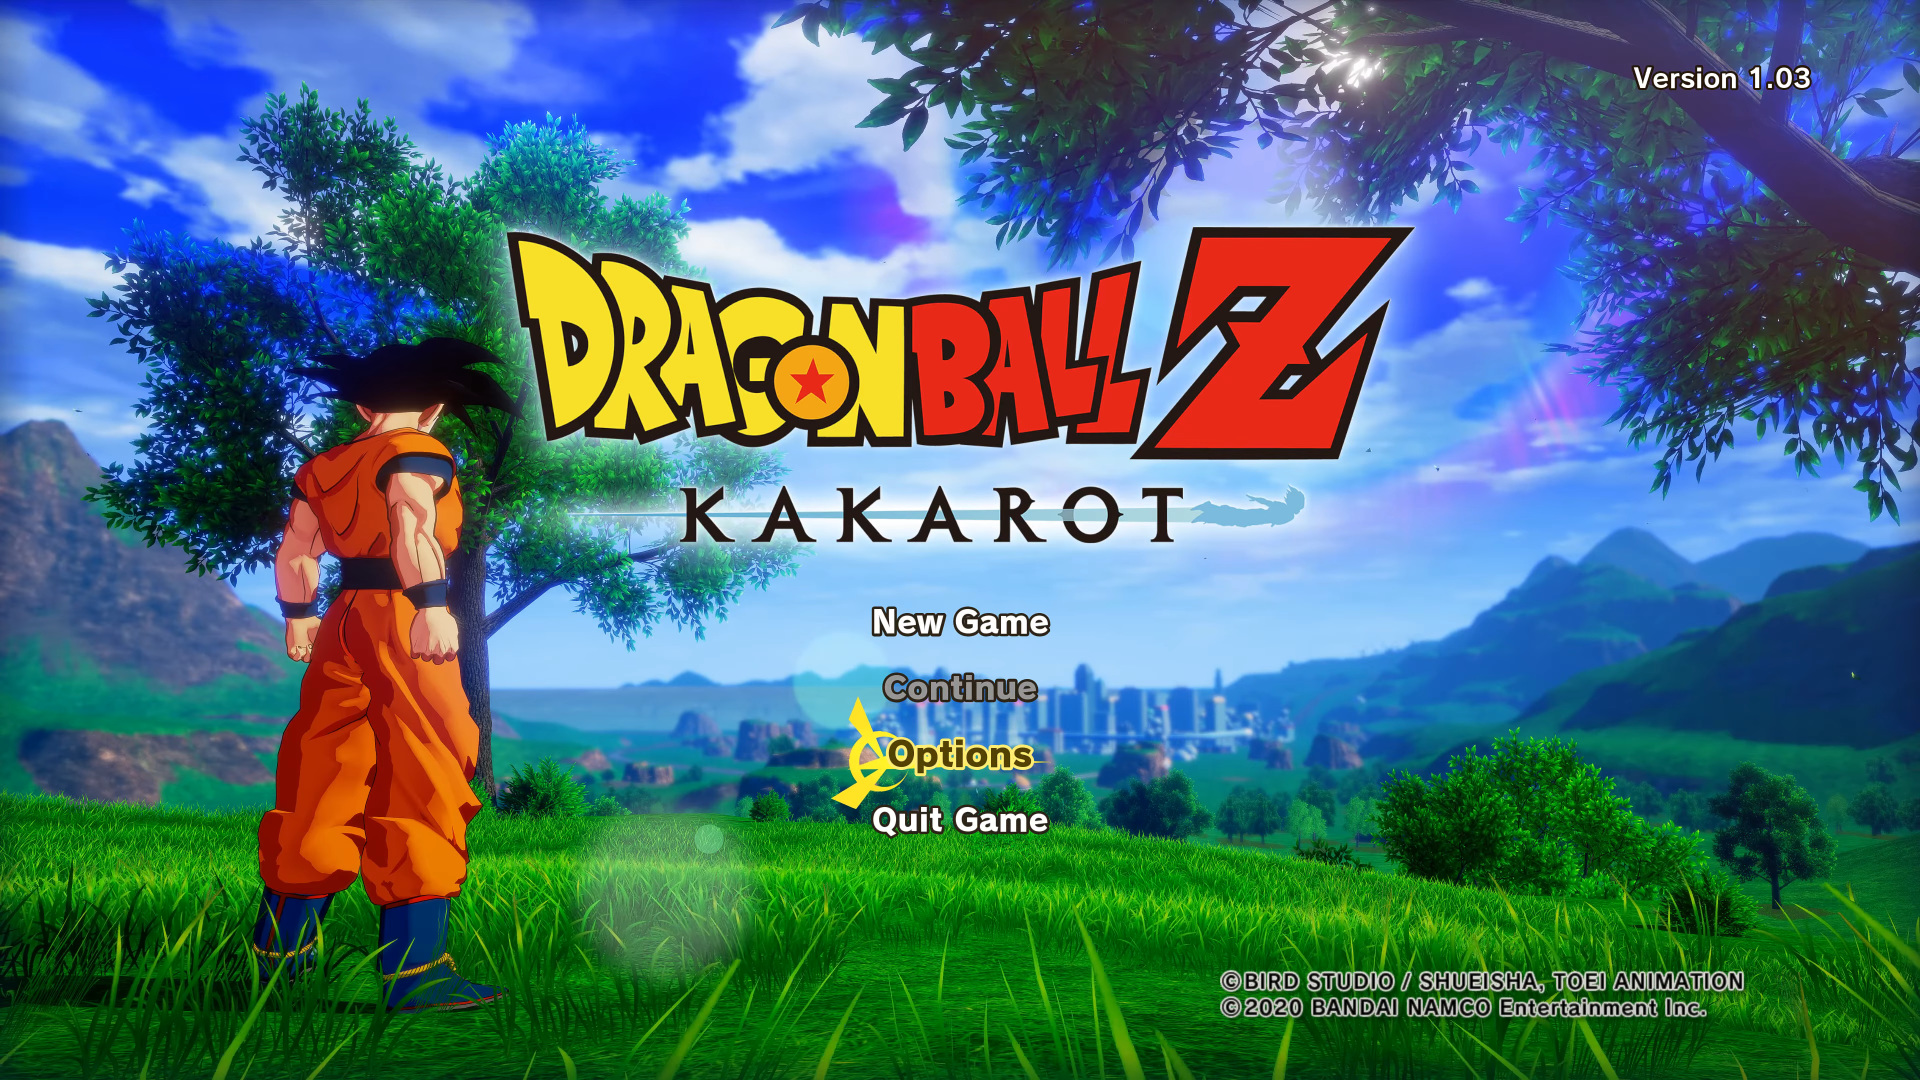 DRAGON BALL Z: KAKAROT - Trilogy Games